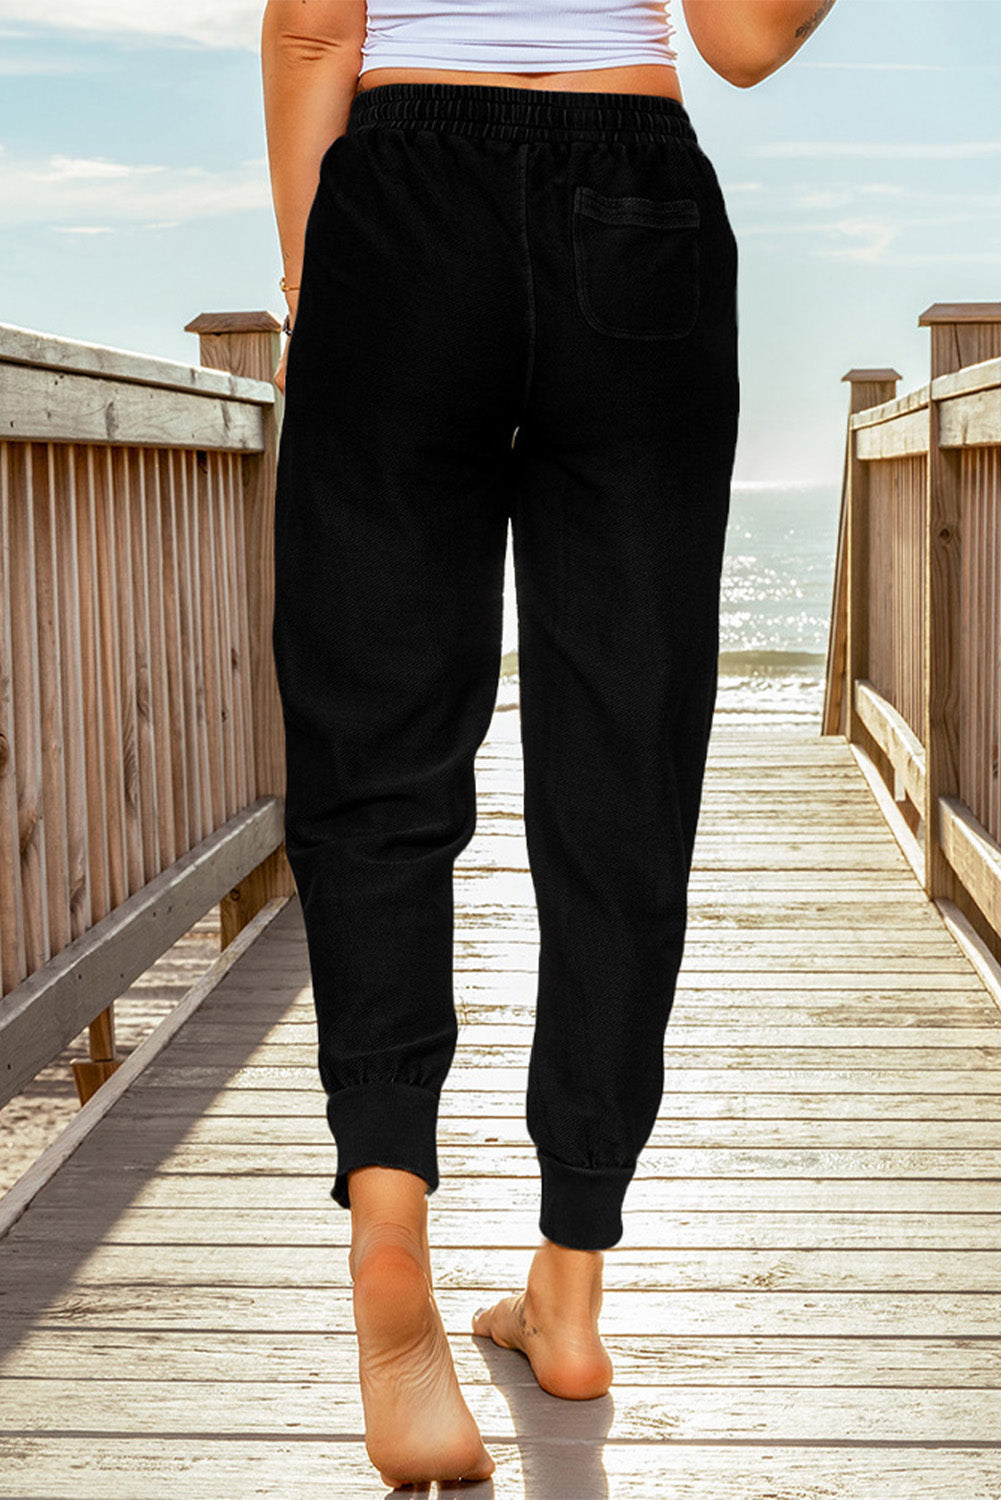 Pantalon de Jogging Noir Femme Taille Elastique avec Poches